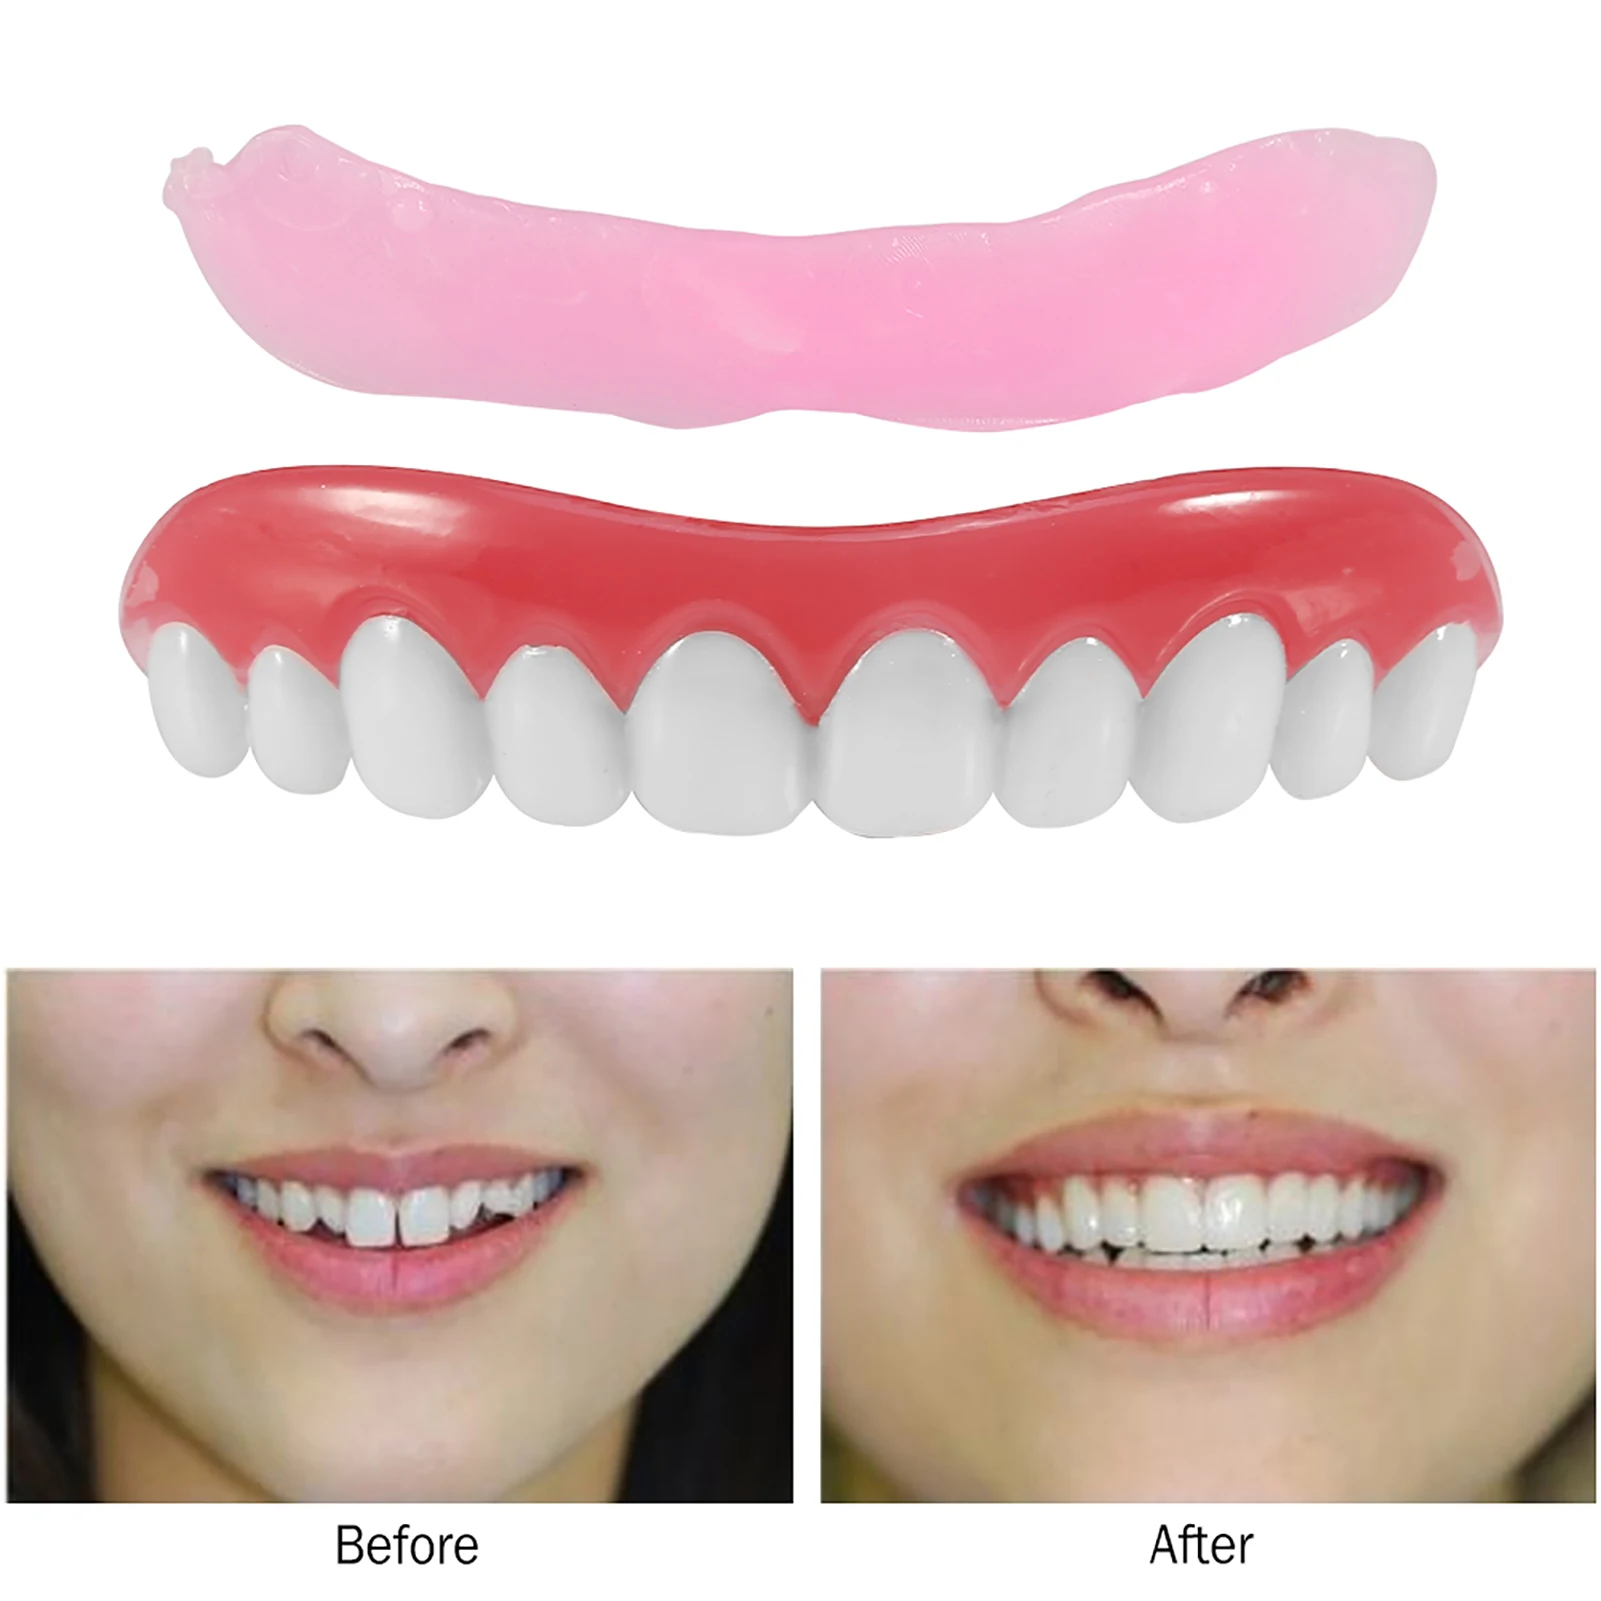 10Pcs False Cosmetic Dentures Teeth Veneer Upper Replacement Dental Tool Perfect Smile Comfort Fit Fake Teeth Oral Hygiene Care